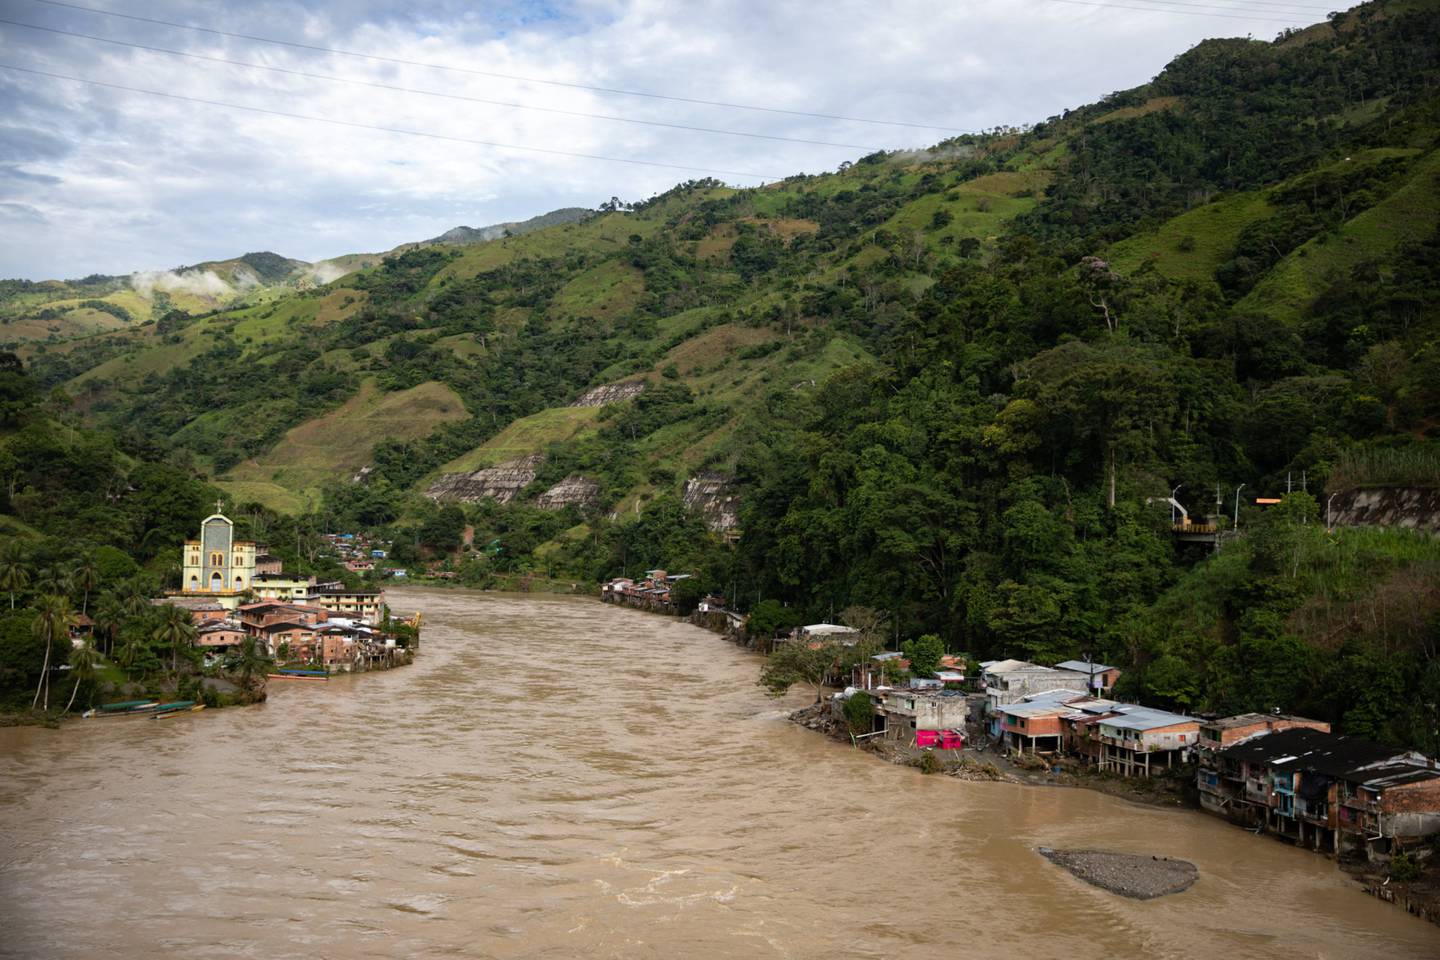 Las casas quedaron en ruinas después de las inundaciones del río Cauca, causadas por daños estructurales a la represa hidroeléctrica Hidroituango, en Puerto Valdivia, departamento de Antioquia, Colombia, el domingo 20 de mayo de 2018. dfd